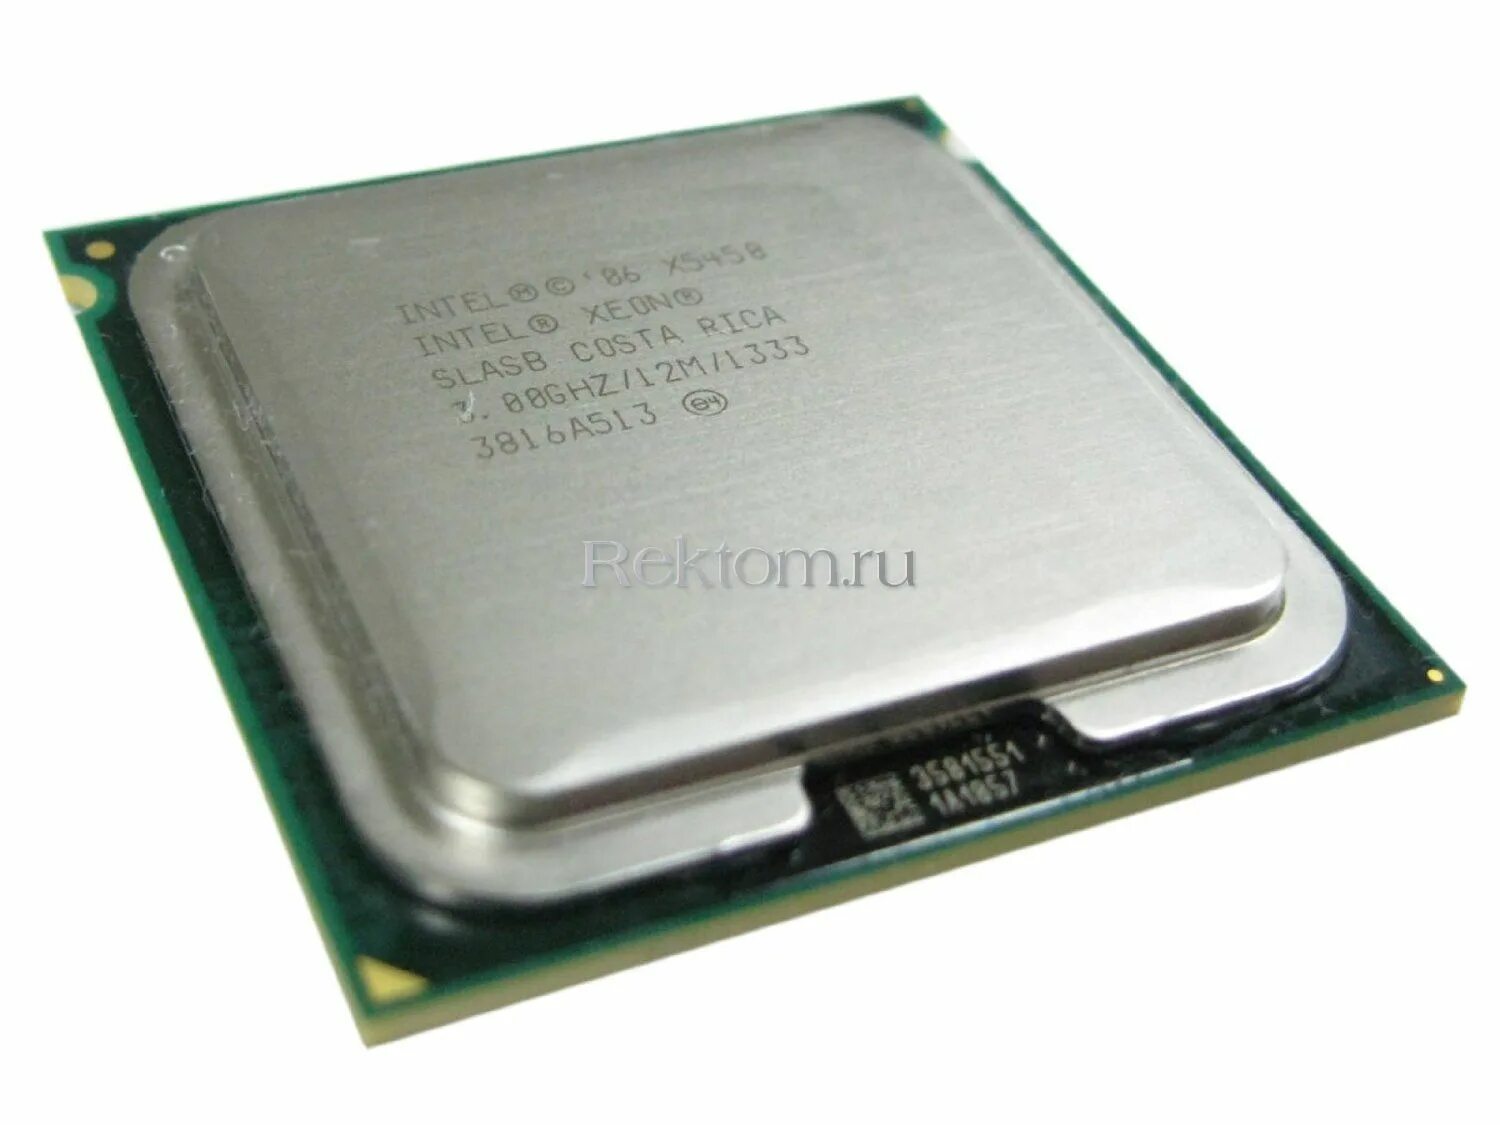 Процессор Xeon x5450. Intel Xeon x5450 Harpertown lga771, 4 x 3000 МГЦ. Intel® Xeon x5450 / 3ghz. Процессор: Intel 2 x Xeon 3,0 ГГЦ 8 МБ. Intel xeon x5450